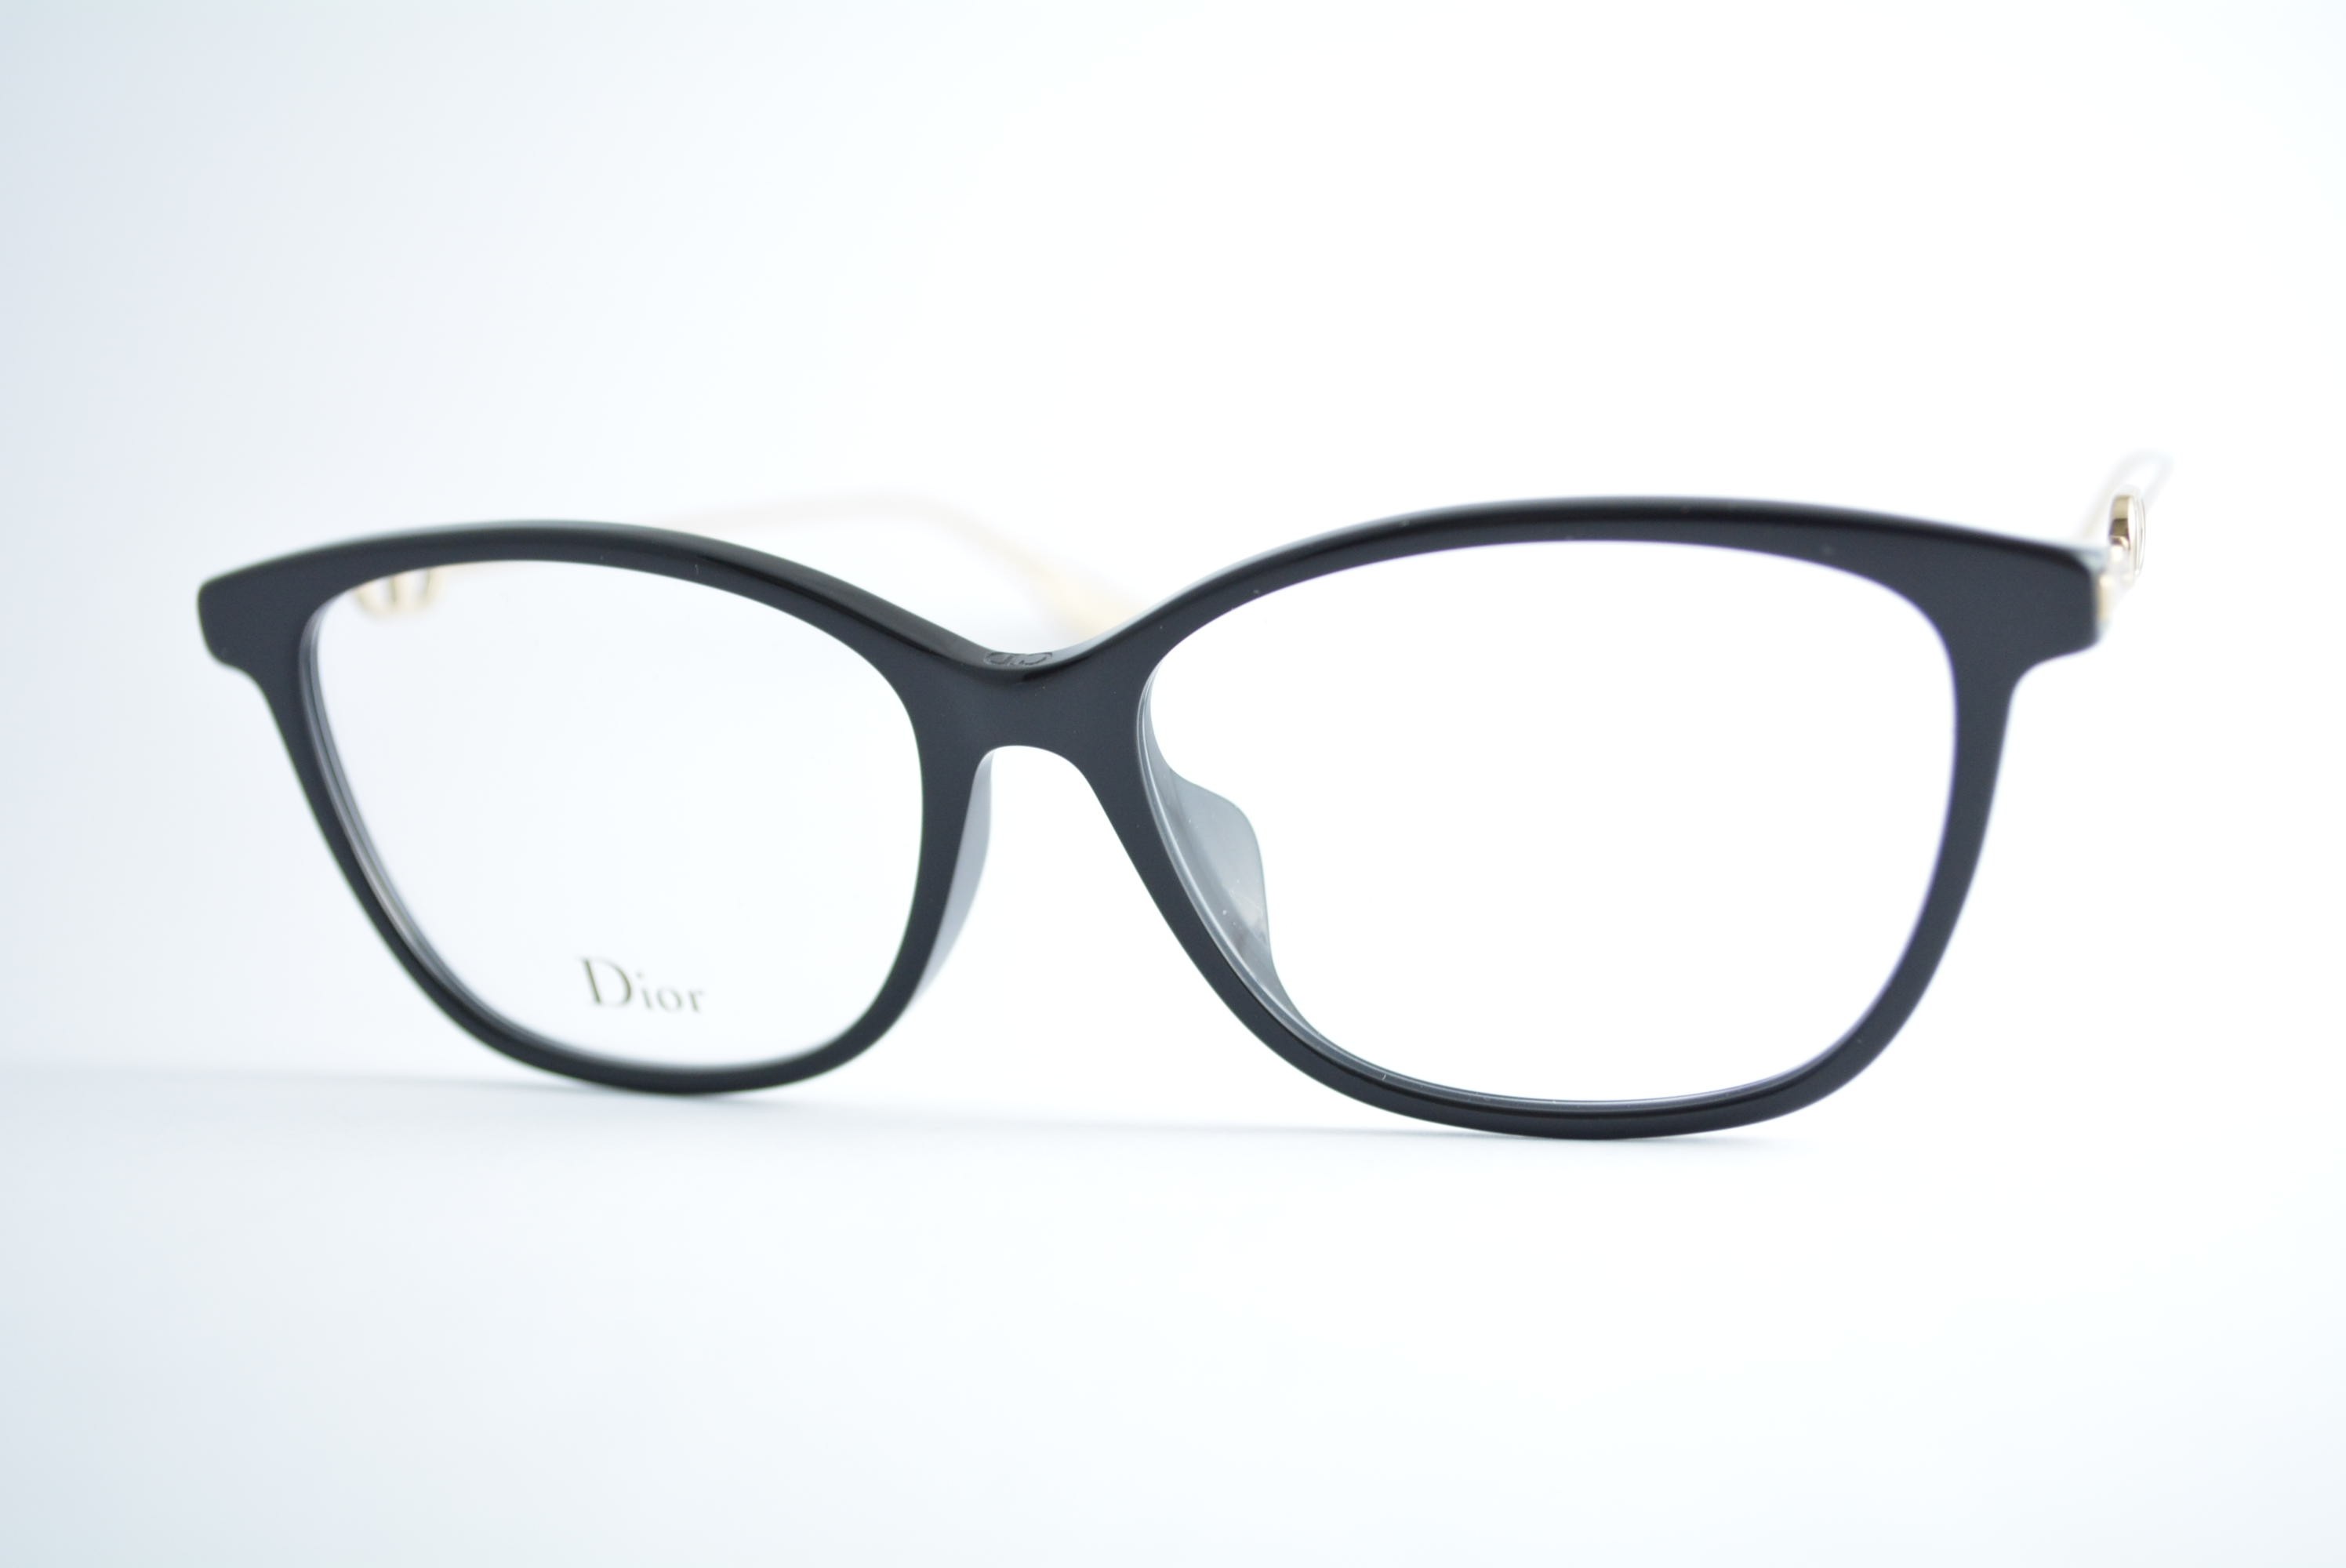 armação de óculos Dior mod DiorSighto 1f 807